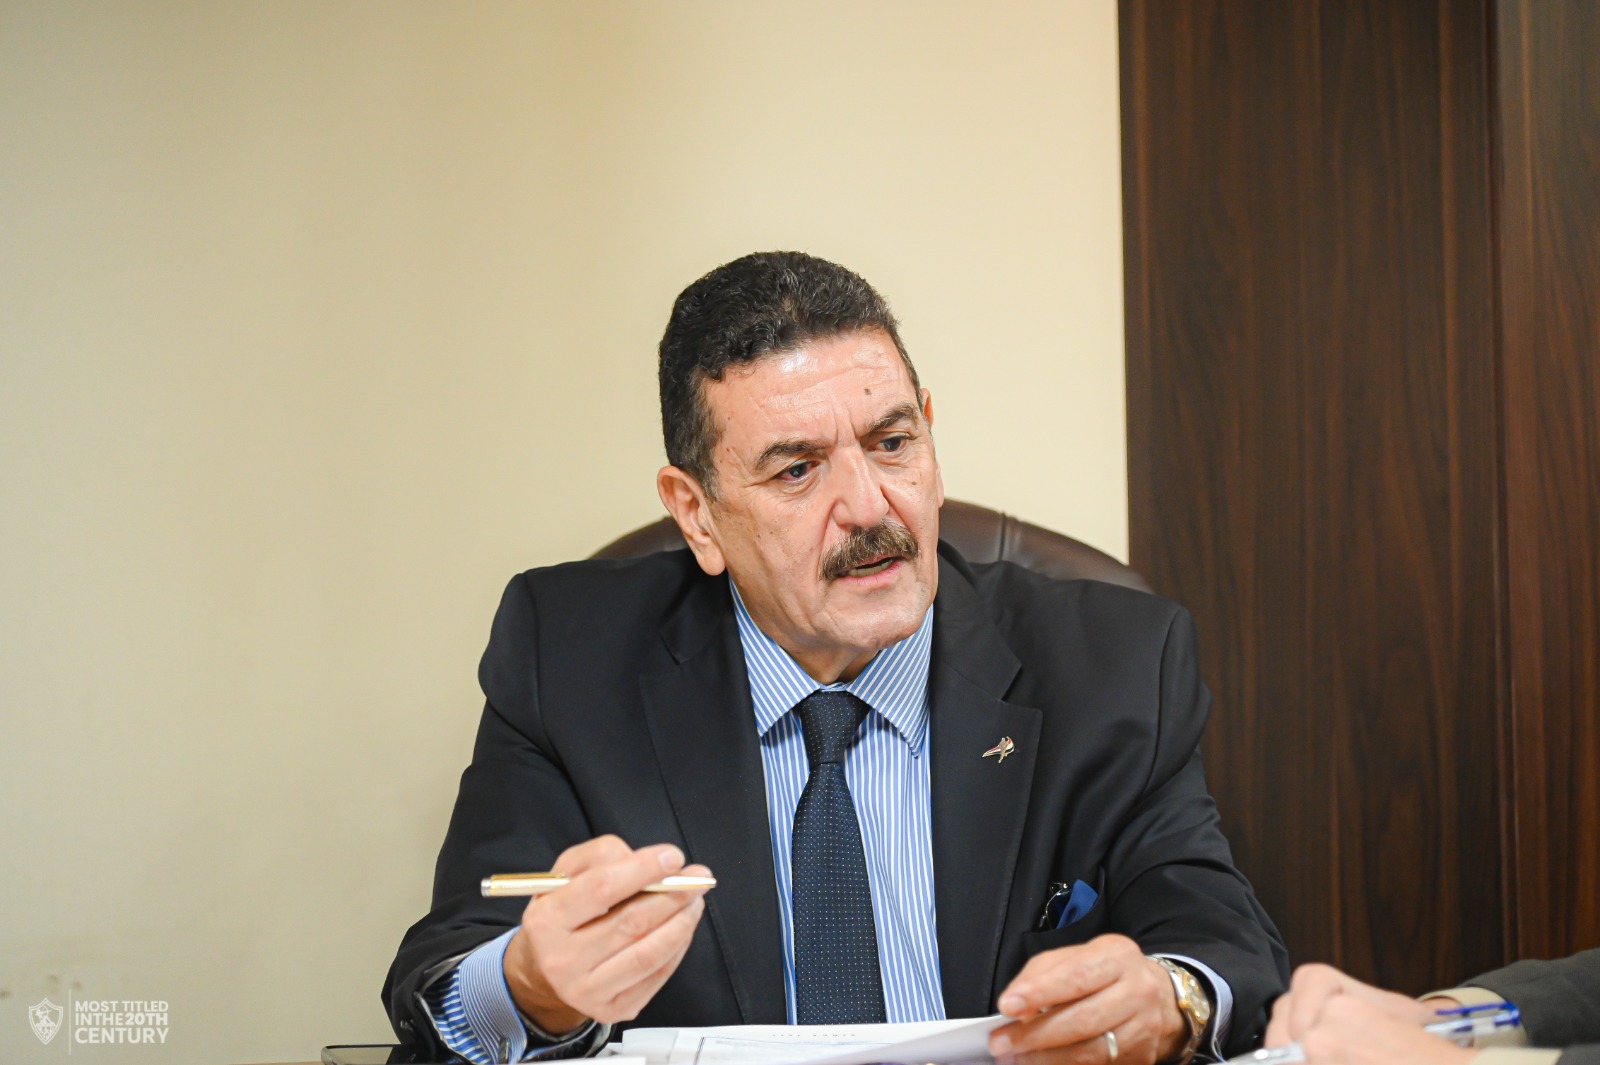 الدكتور عماد البناني المدير التنفيذي لنادي الزمالك ورئيس اللجنة المكلفة بإدارة القلعة البيضاء